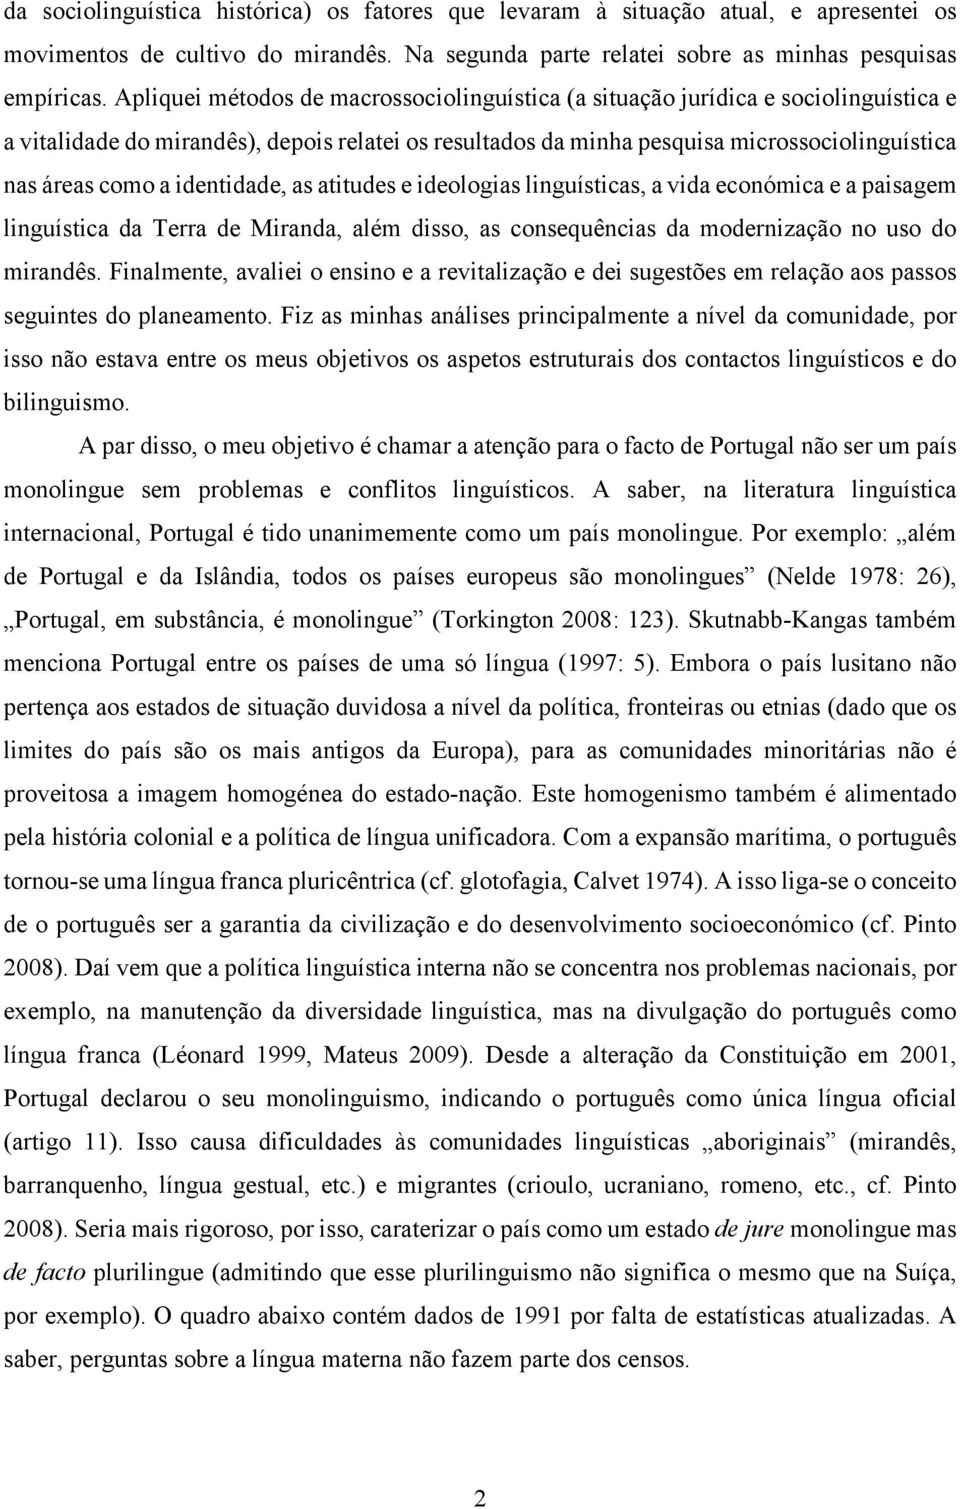 identidade, as atitudes e ideologias linguísticas, a vida económica e a paisagem linguística da Terra de Miranda, além disso, as consequências da modernização no uso do mirandês.